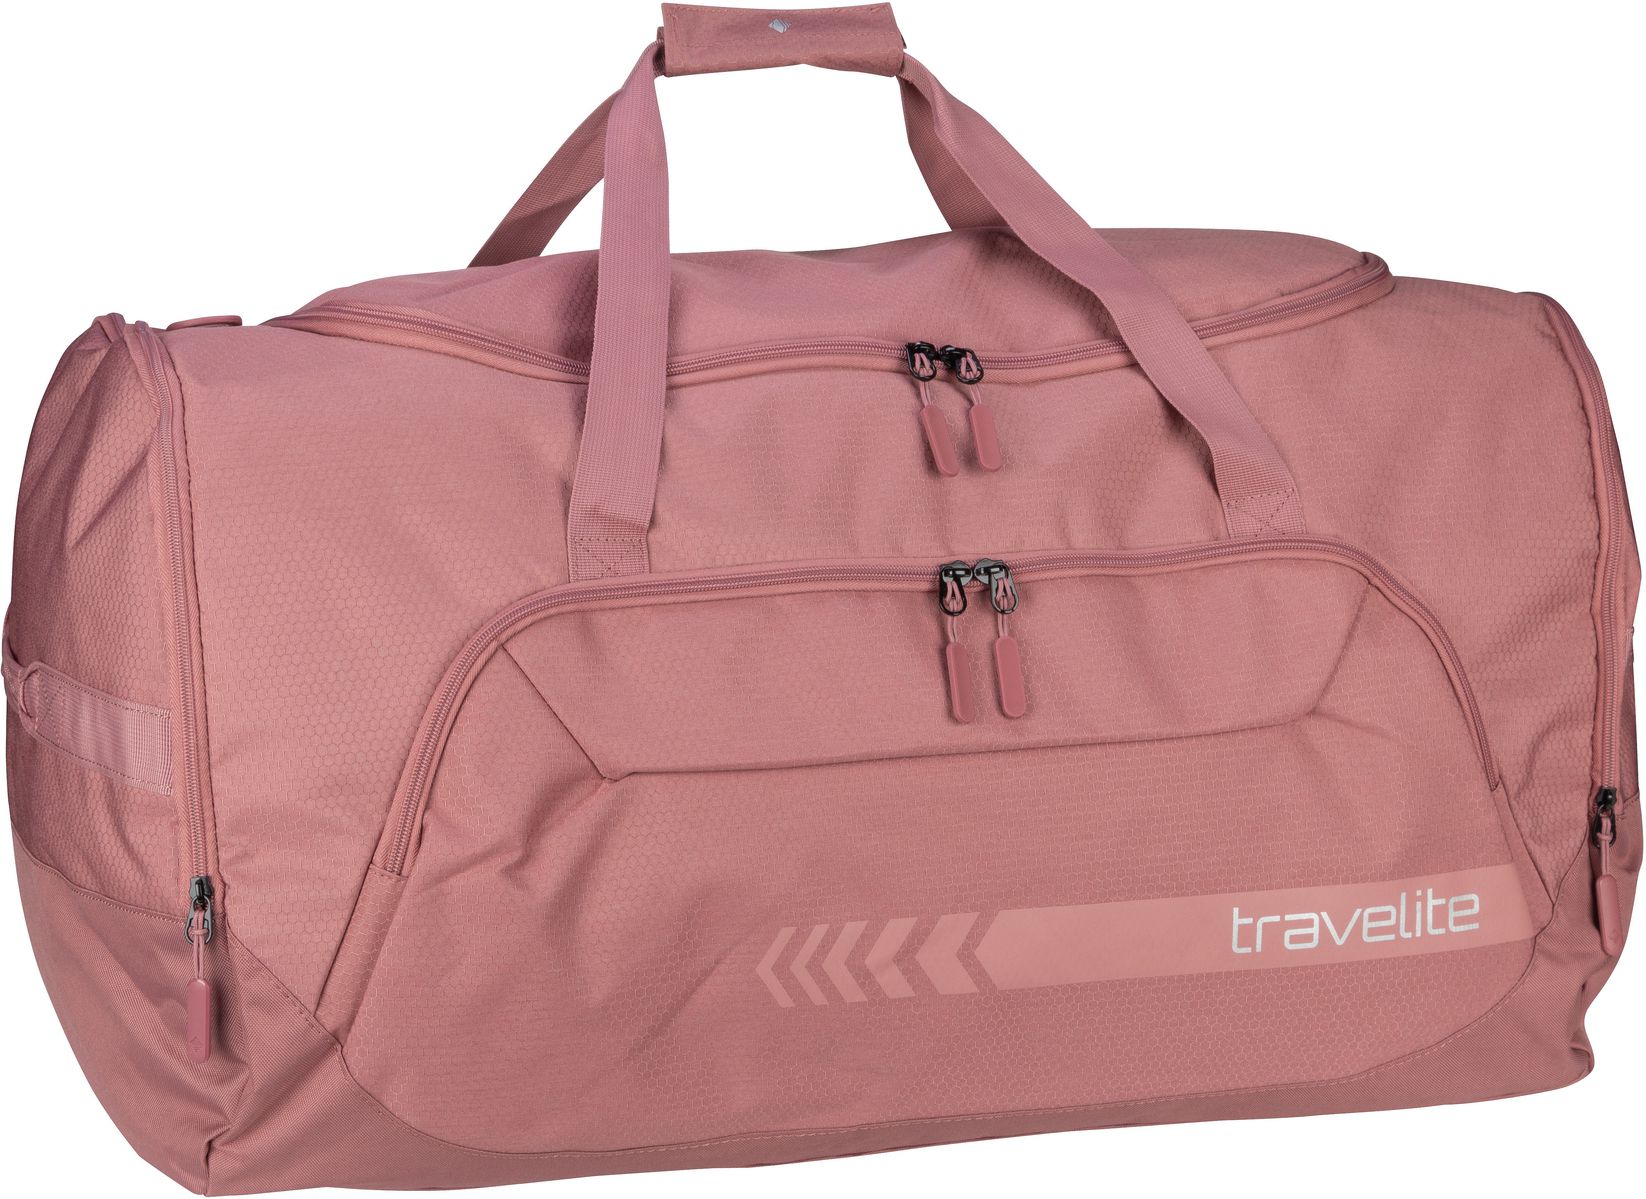 travelite Kick Off Reisetasche XL - Rosé